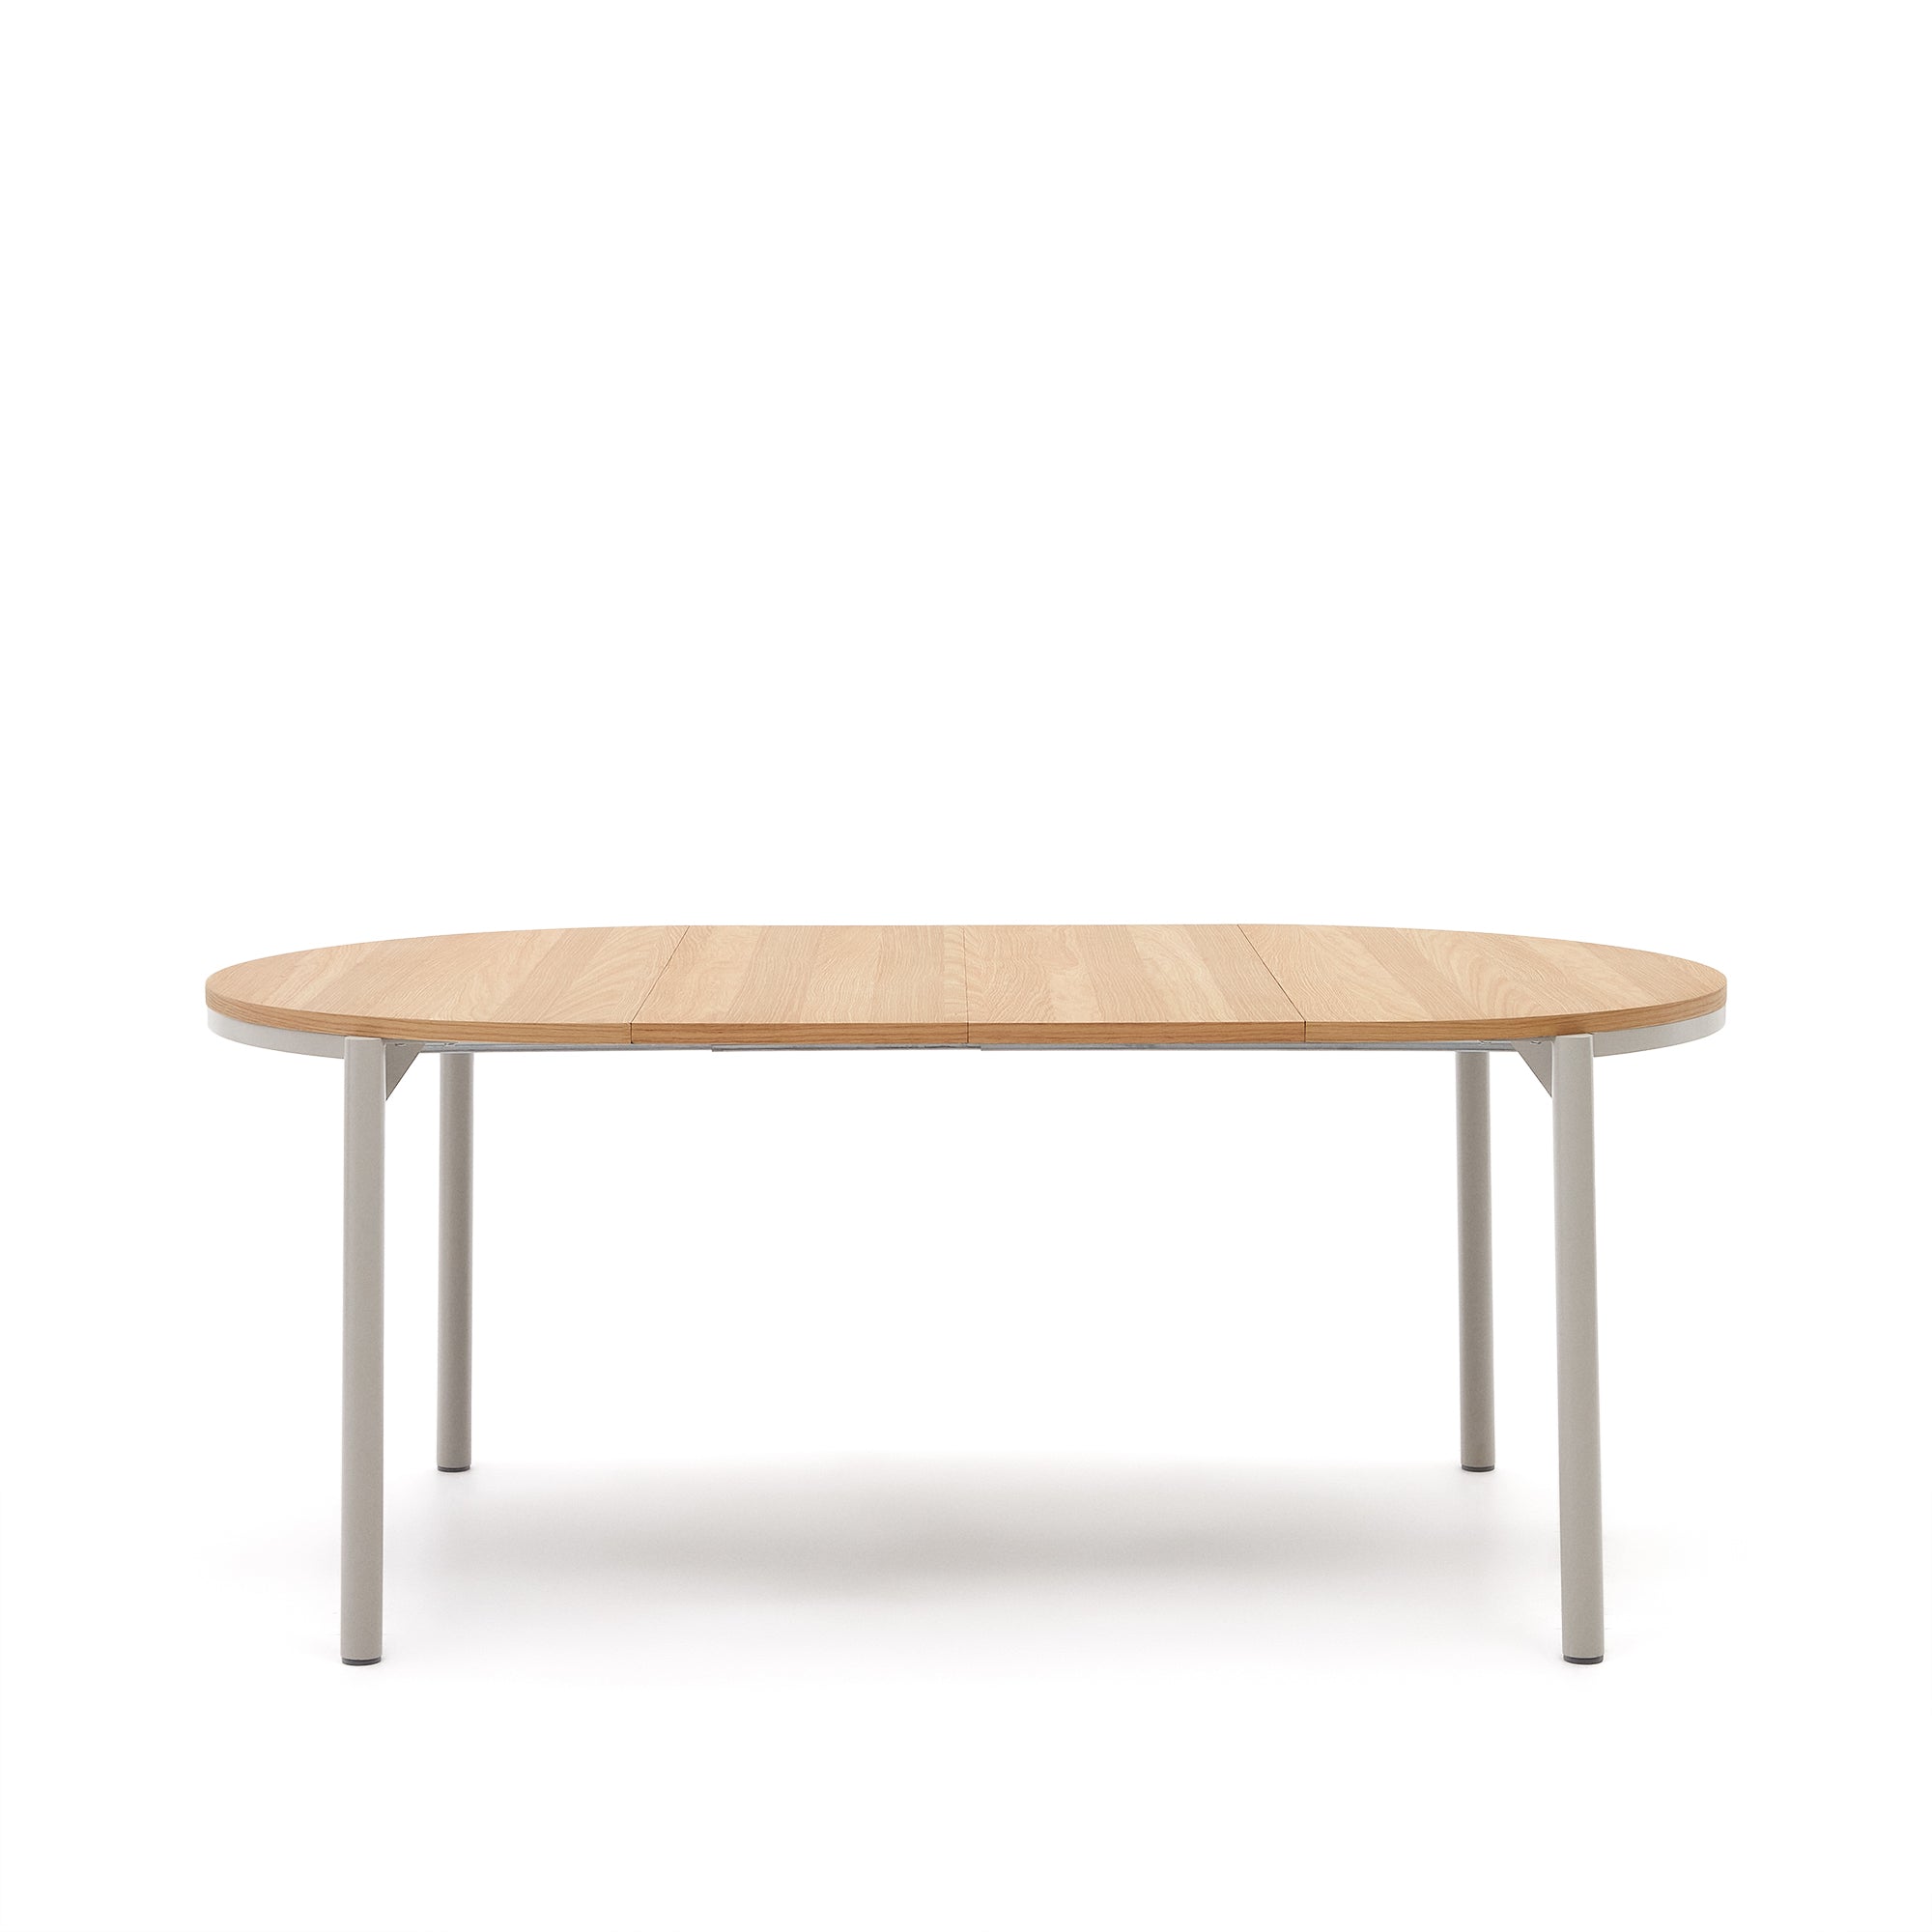 Montuiri kihúzható kerek asztal tölgyfa furnérból és acél lábakkal, szürke kivitelben, Ø 120 (200) cm